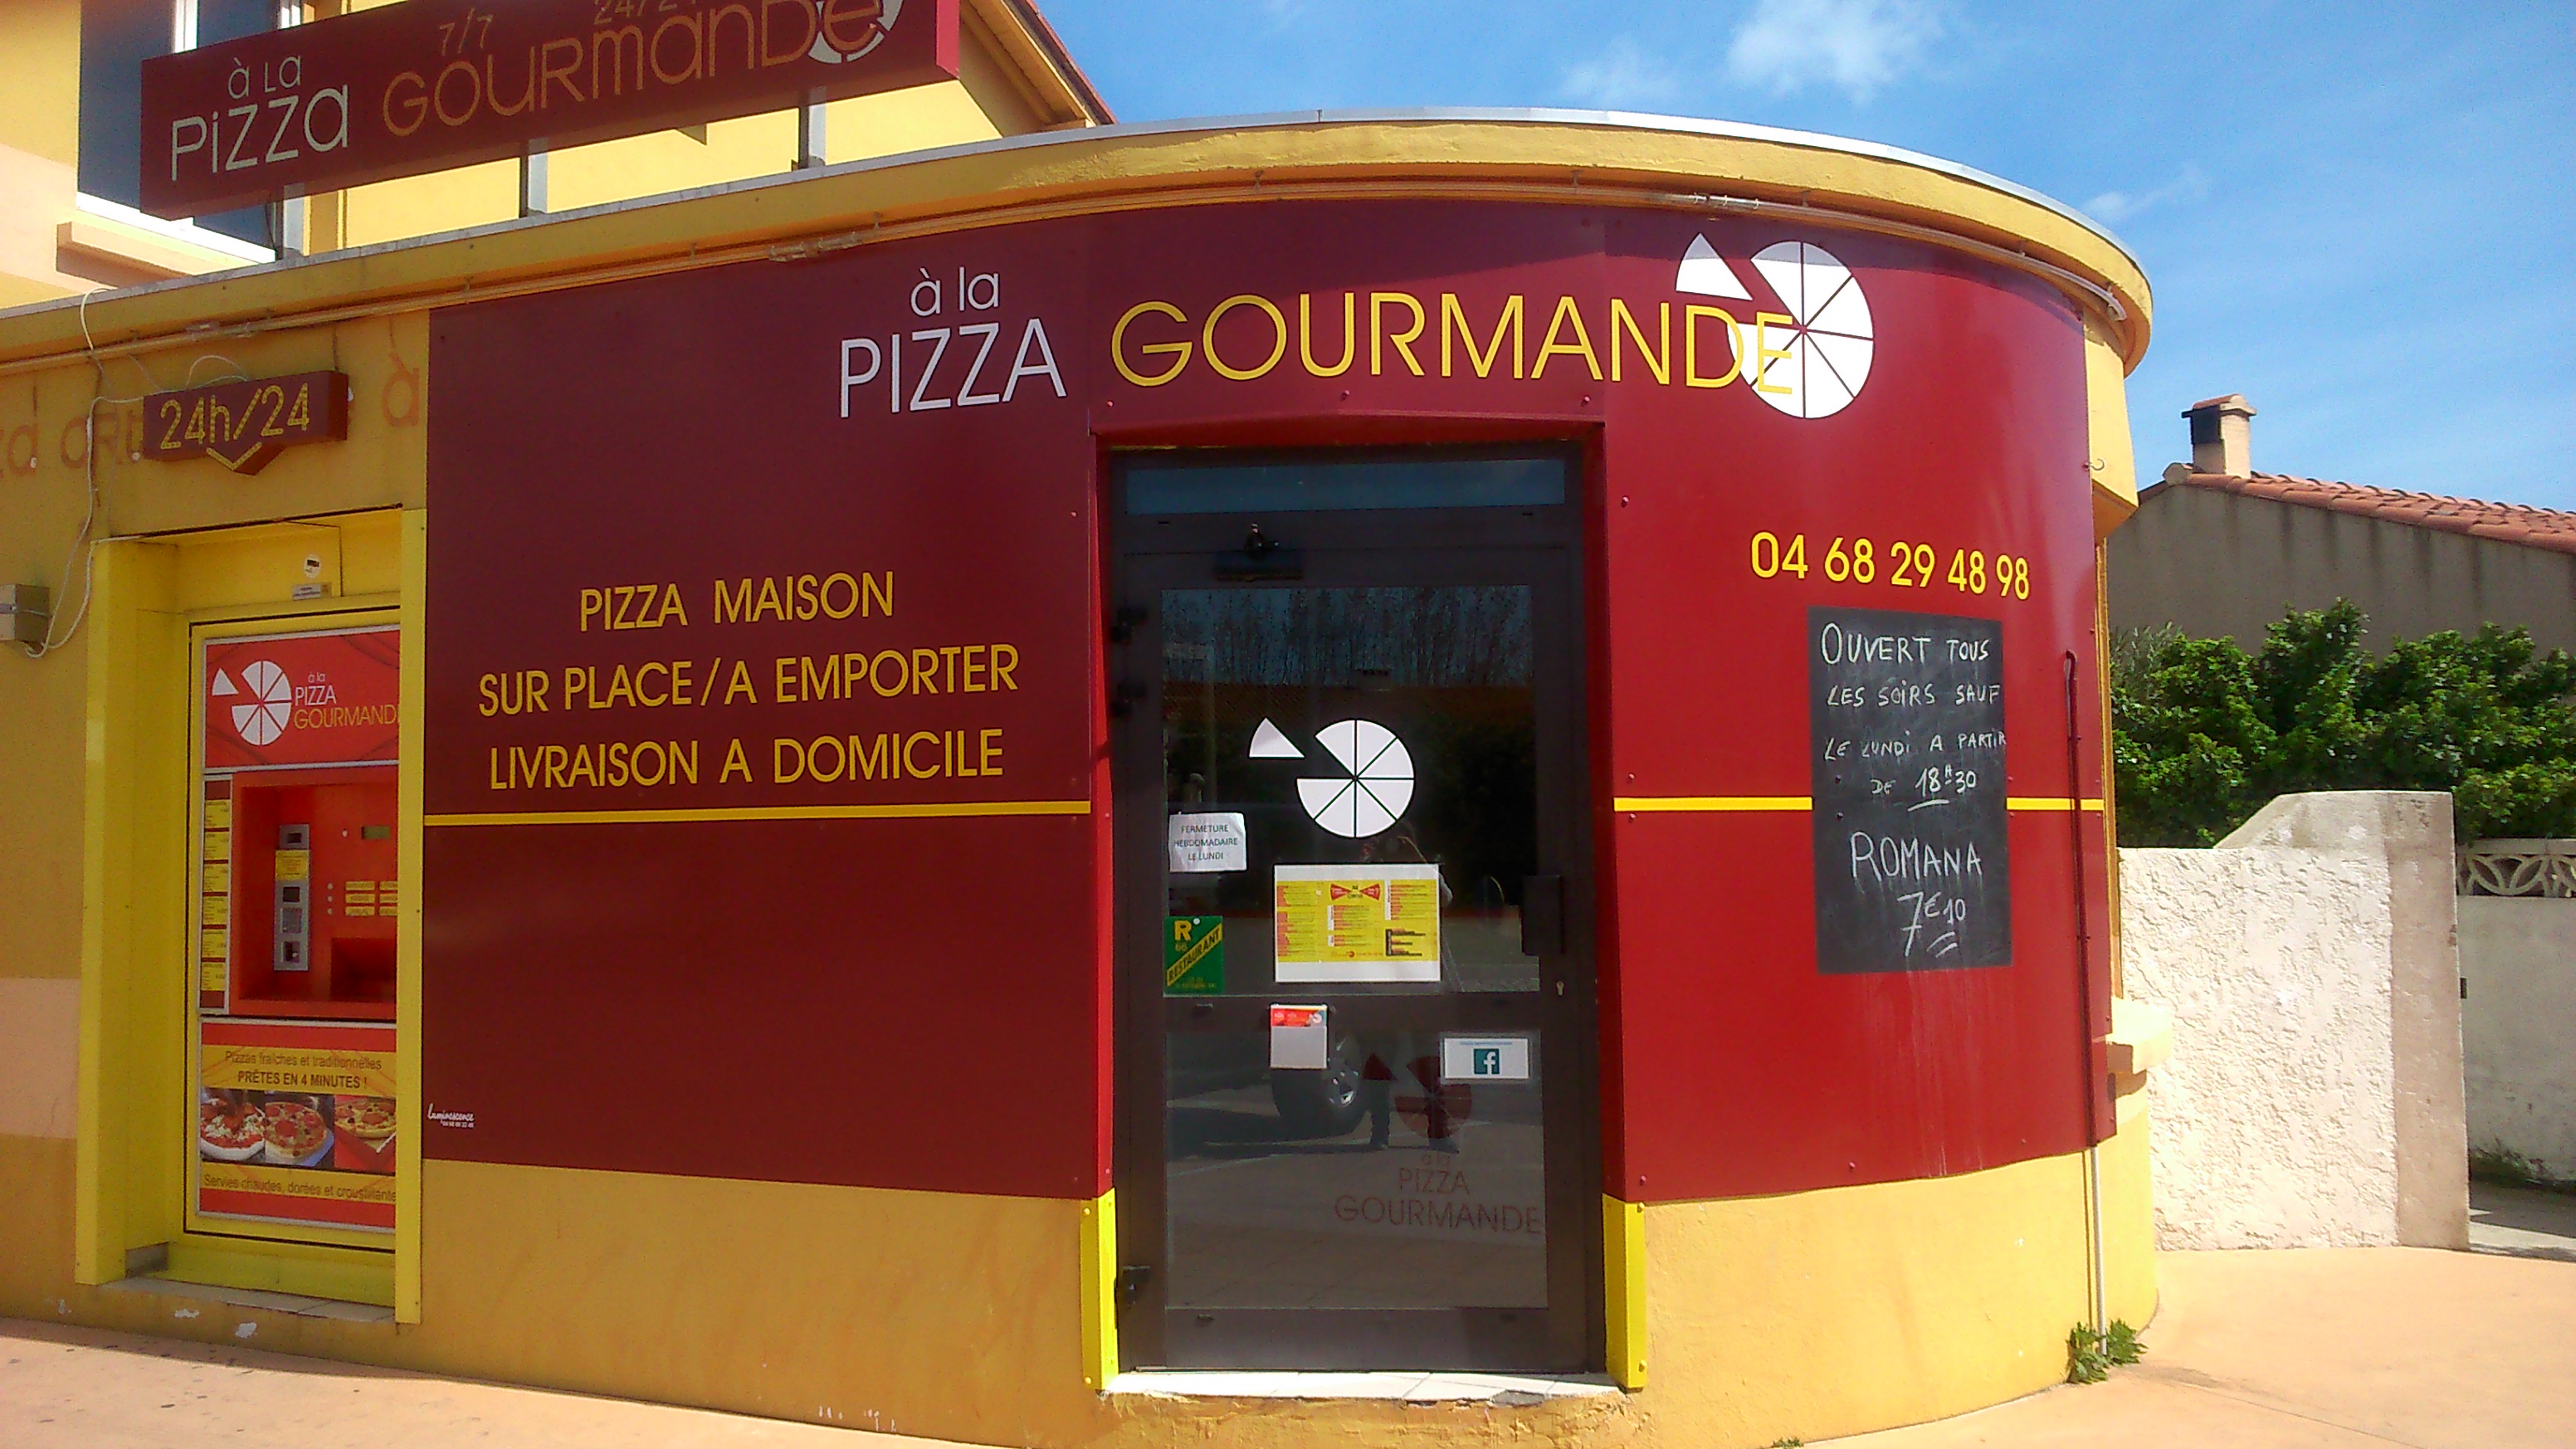 DistriPizza Pizza Gourmande